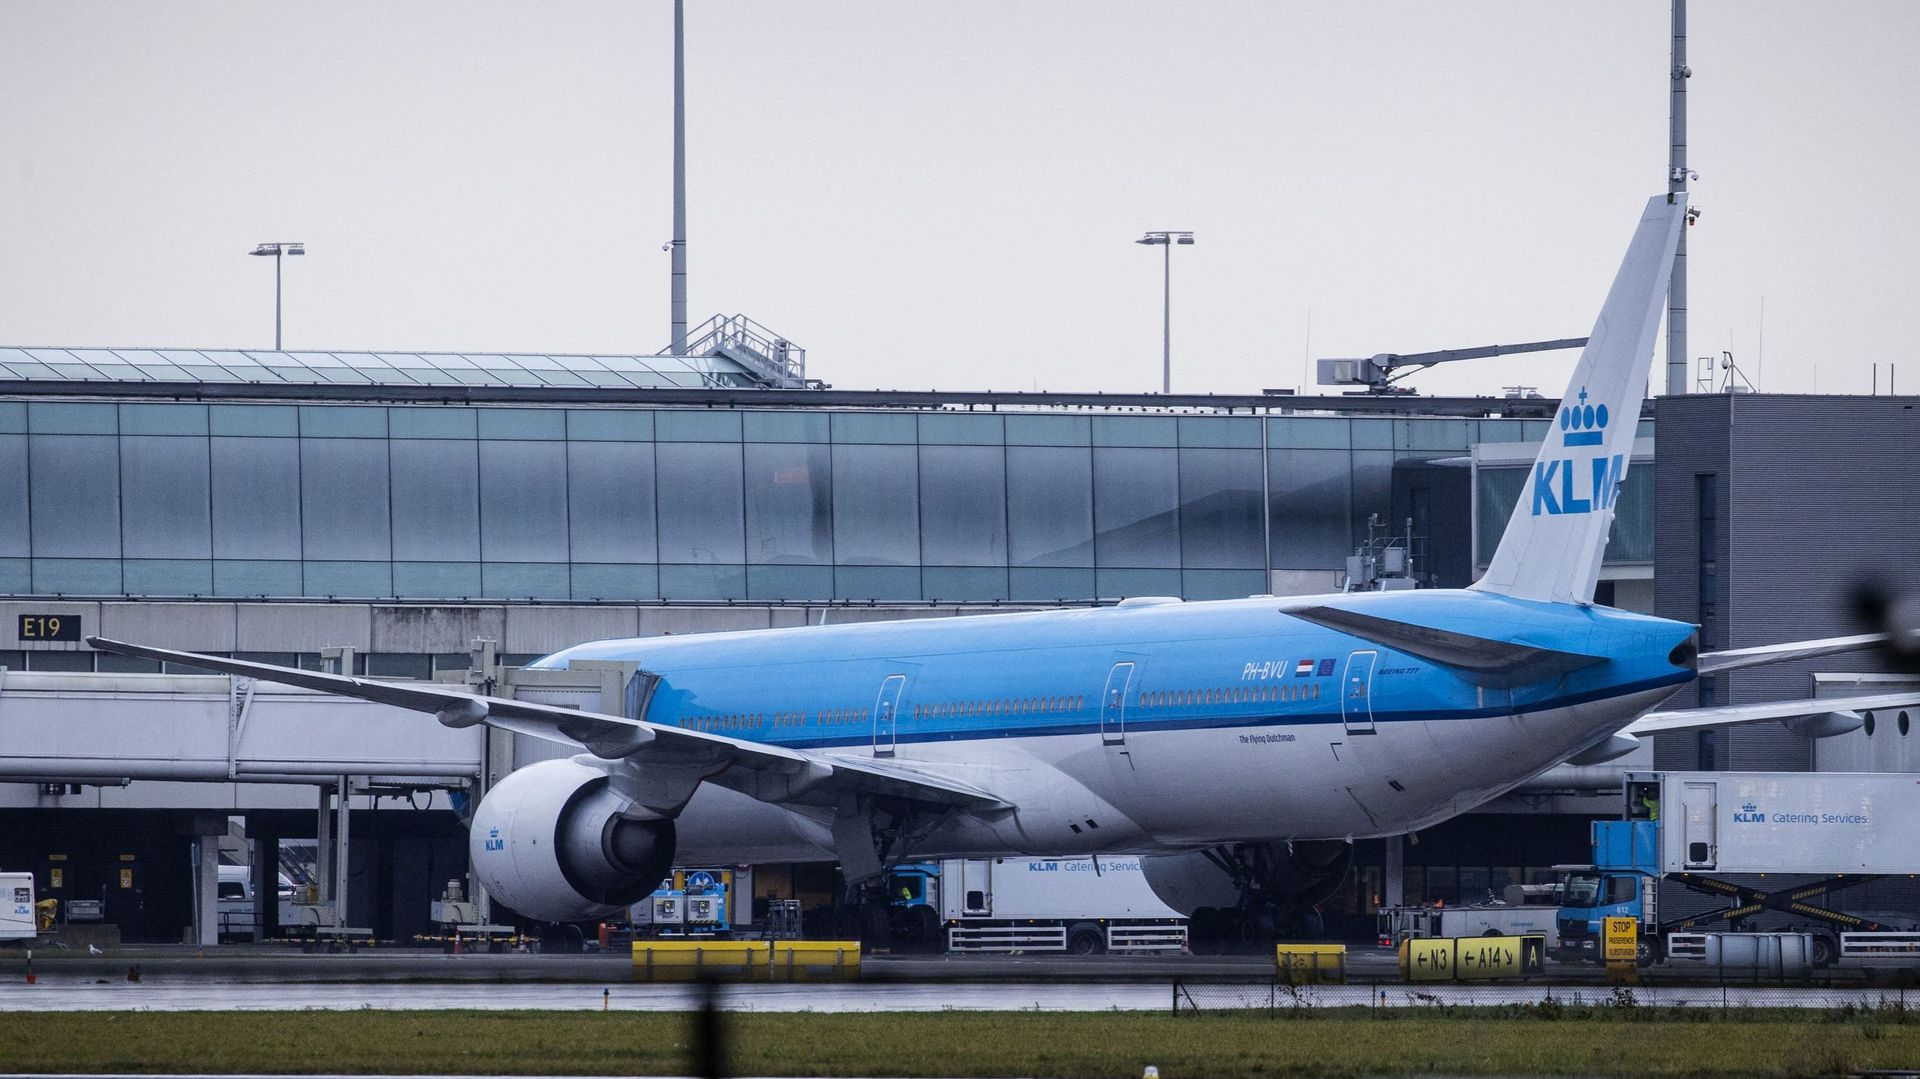 Un passager expulsé de l'avion à Amsterdam après avoir dit à son voisin qu'il avait une bombe sur lui